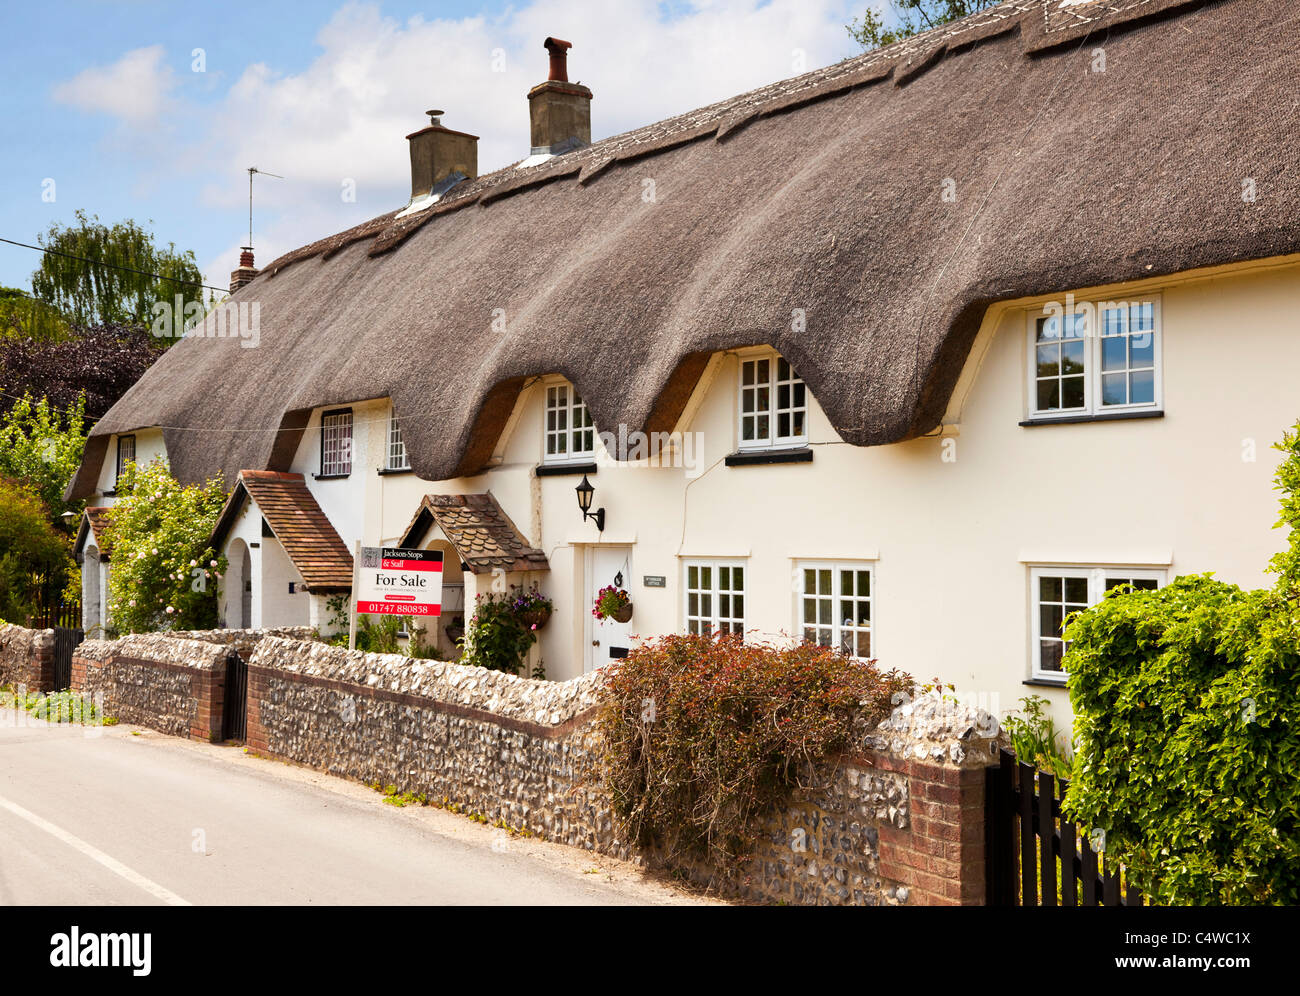 Reetgedeckte Hütte UK - Old English Doppelhaushälfte / Terrasse in einem kleinen Dorf, ein Reetgedeckte Hütte mit einem zum Verkauf Schild, England UK Stockfoto